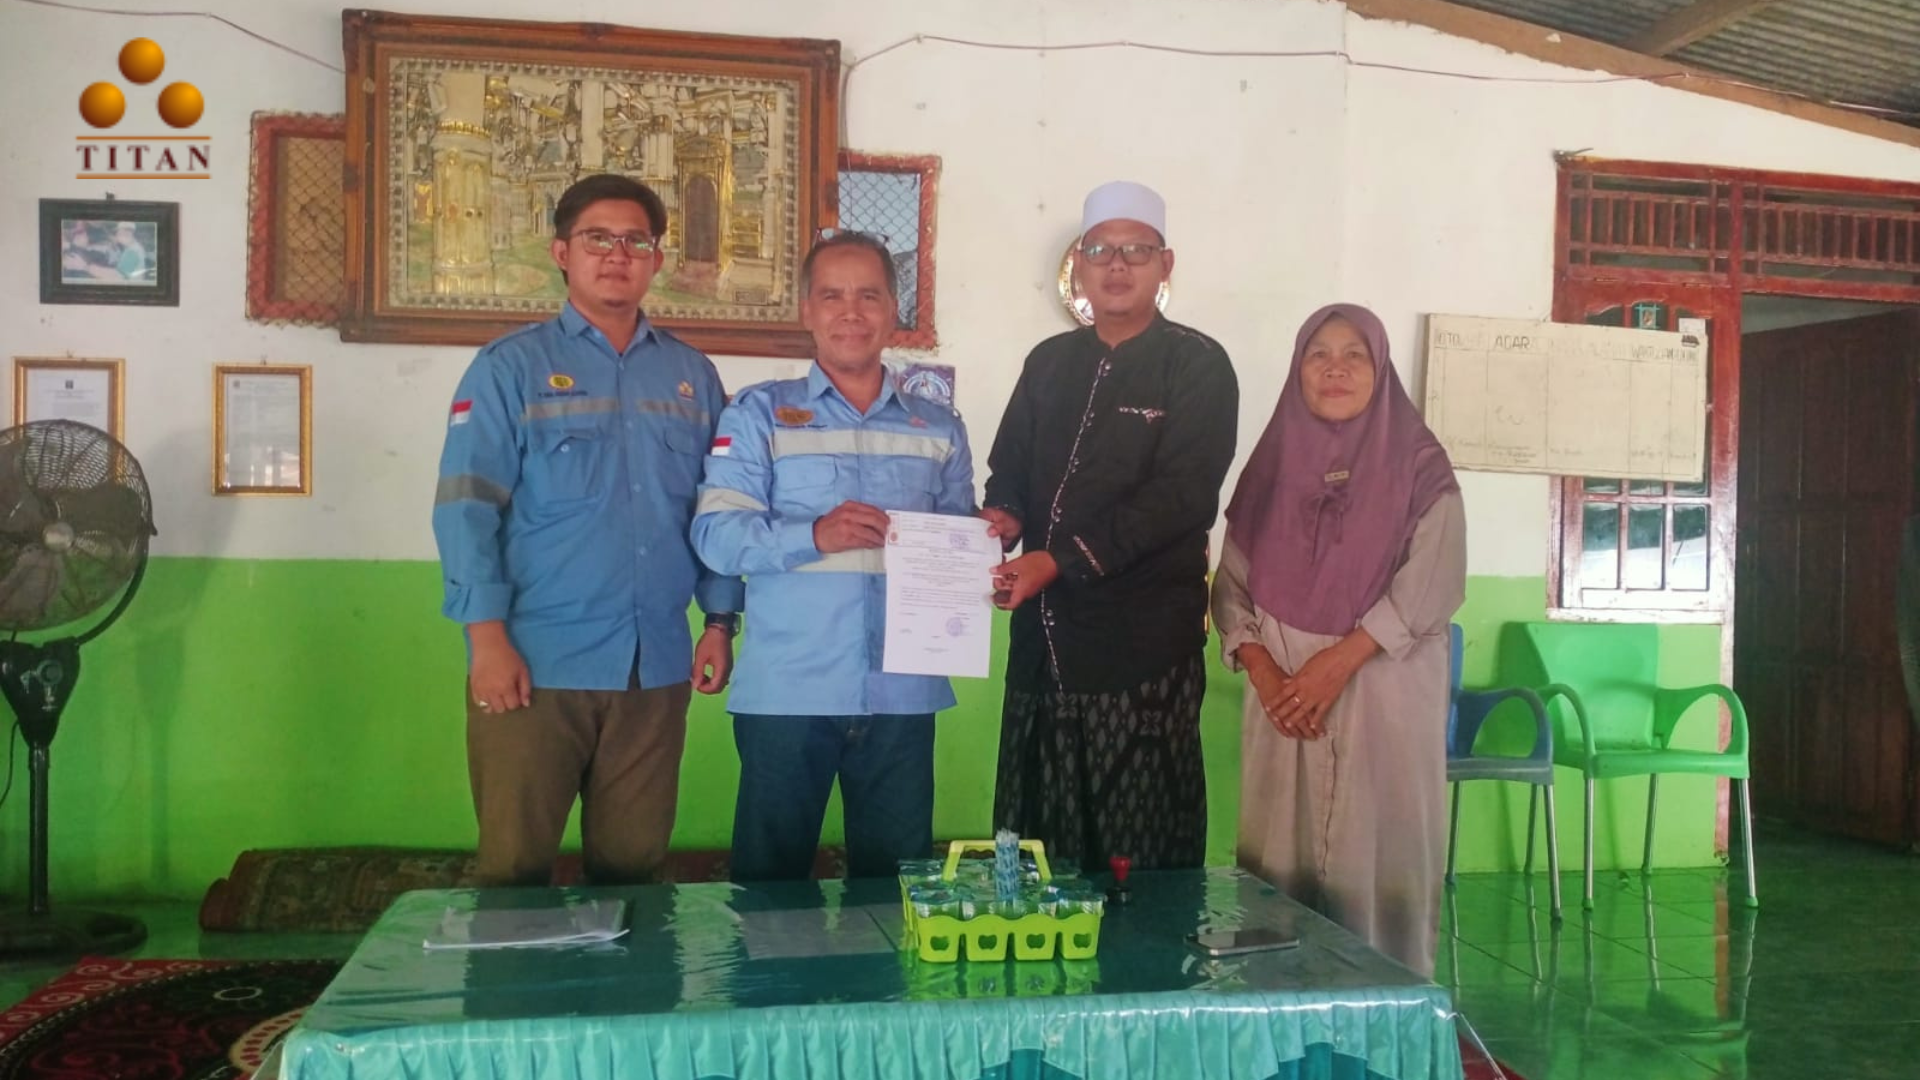 PT Bara Anugrah Sejahtera (Titan Group) Bantu Pembangunan Asrama Anak Yatim di Sekitar Perusahaan